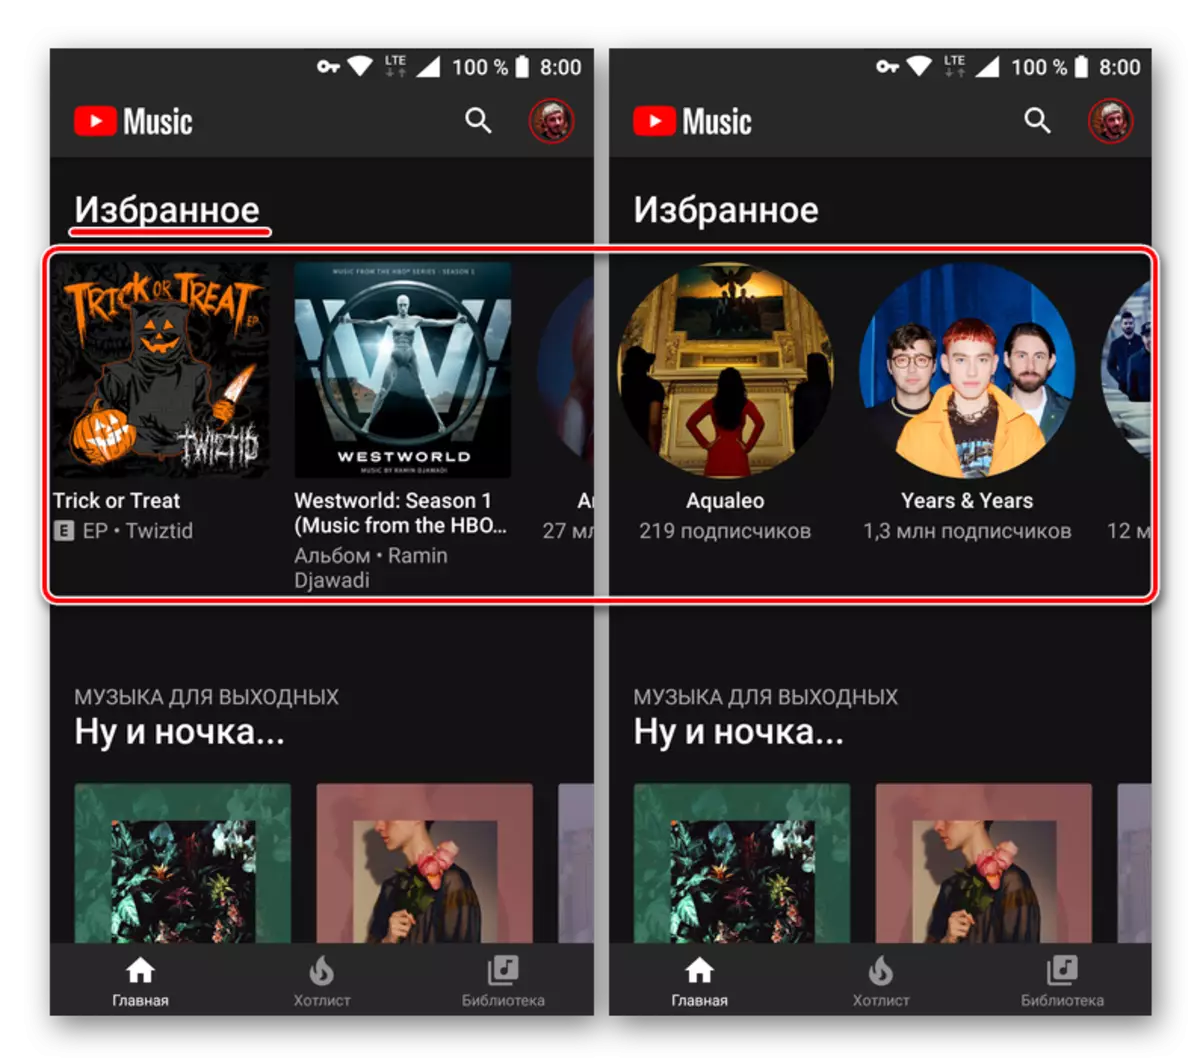 ดูรายการโปรดในแอปพลิเคชั่นเพลง YouTube สำหรับ Android